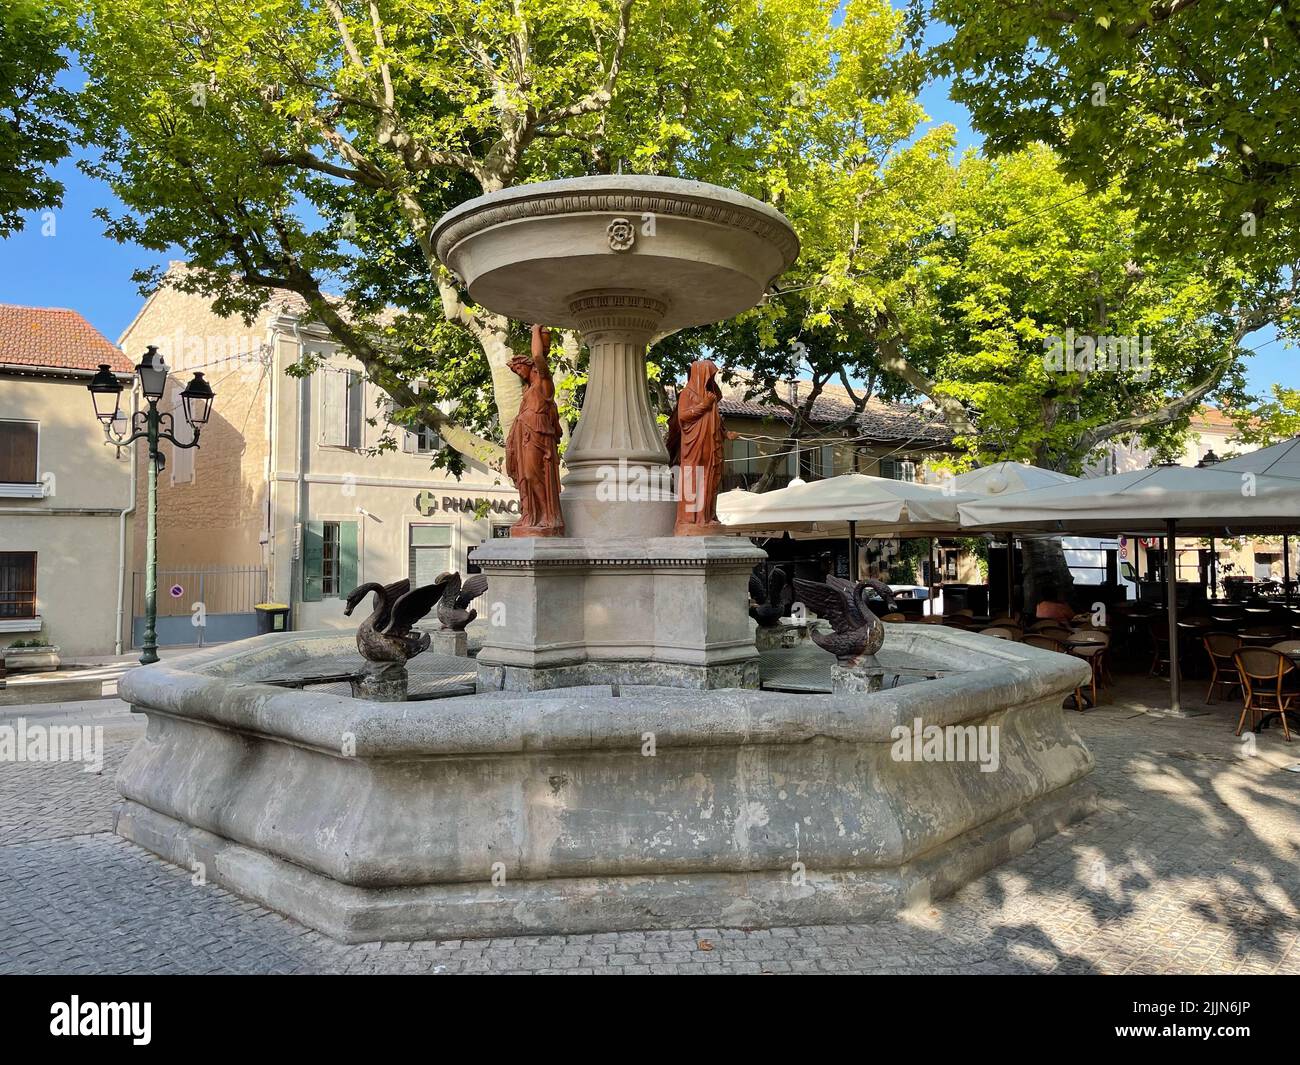 Fontaine des Quatre Saisons, Maussane-les-Alpilles, Bouches-du-Rhone, Provence-Alpes-Cote-d'Azur, France Stock Photo